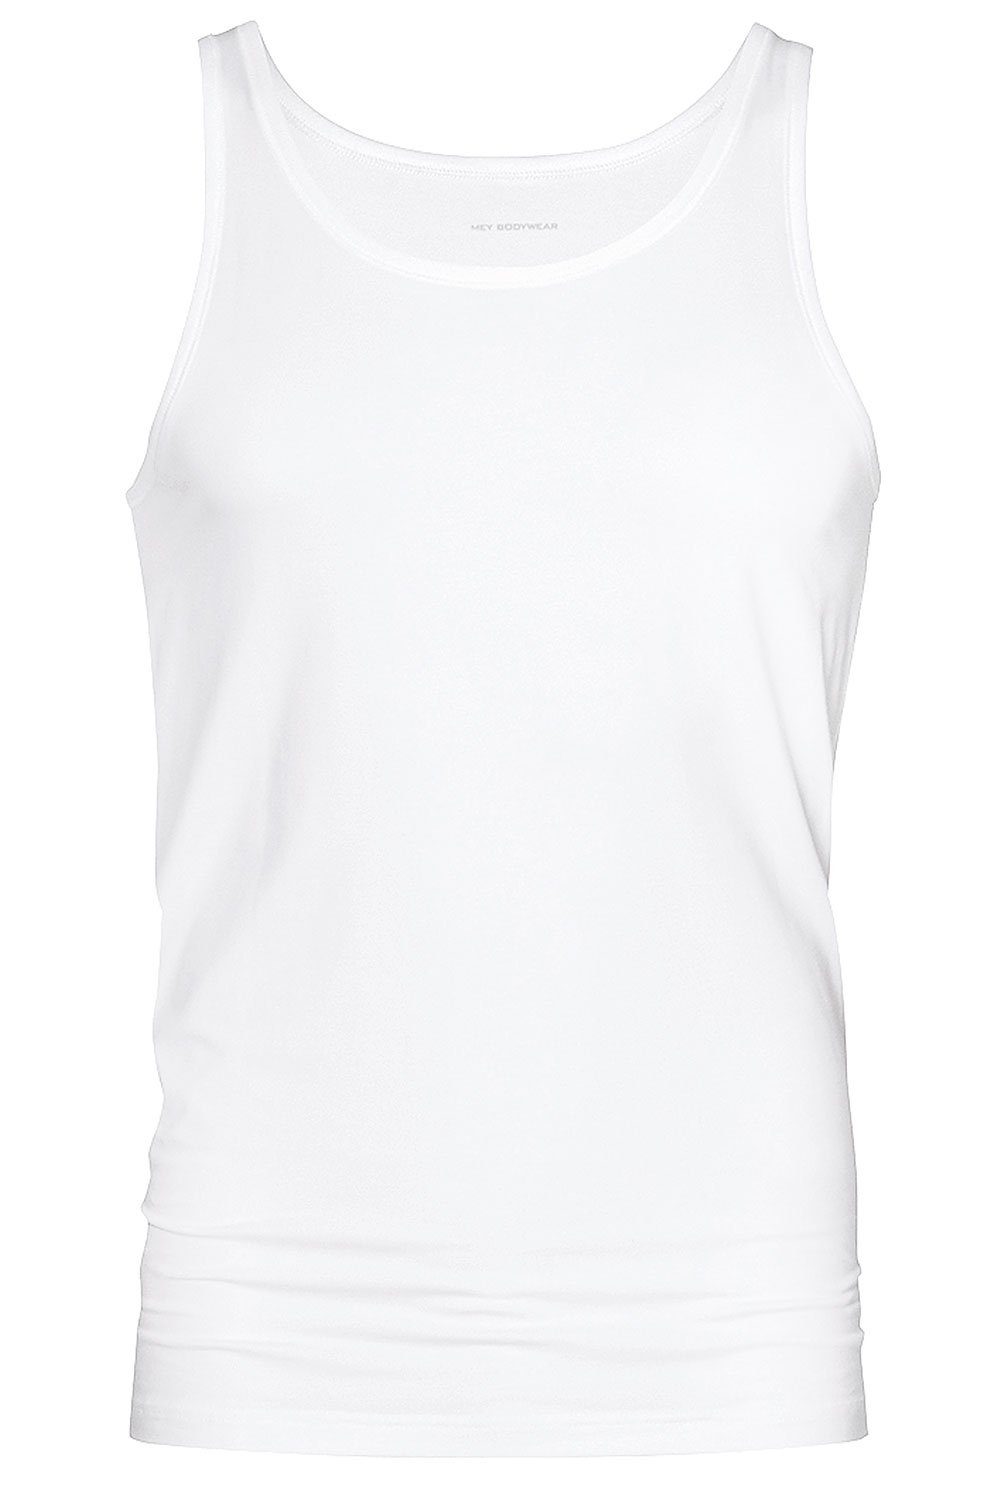 Mey Unterhemd DRY COTTON (Vorteilspack, 2-St., 2er-Pack) Athletic-Shirt Unterziehshirt temperaturausgleichend im Doppelpack weiss (101)